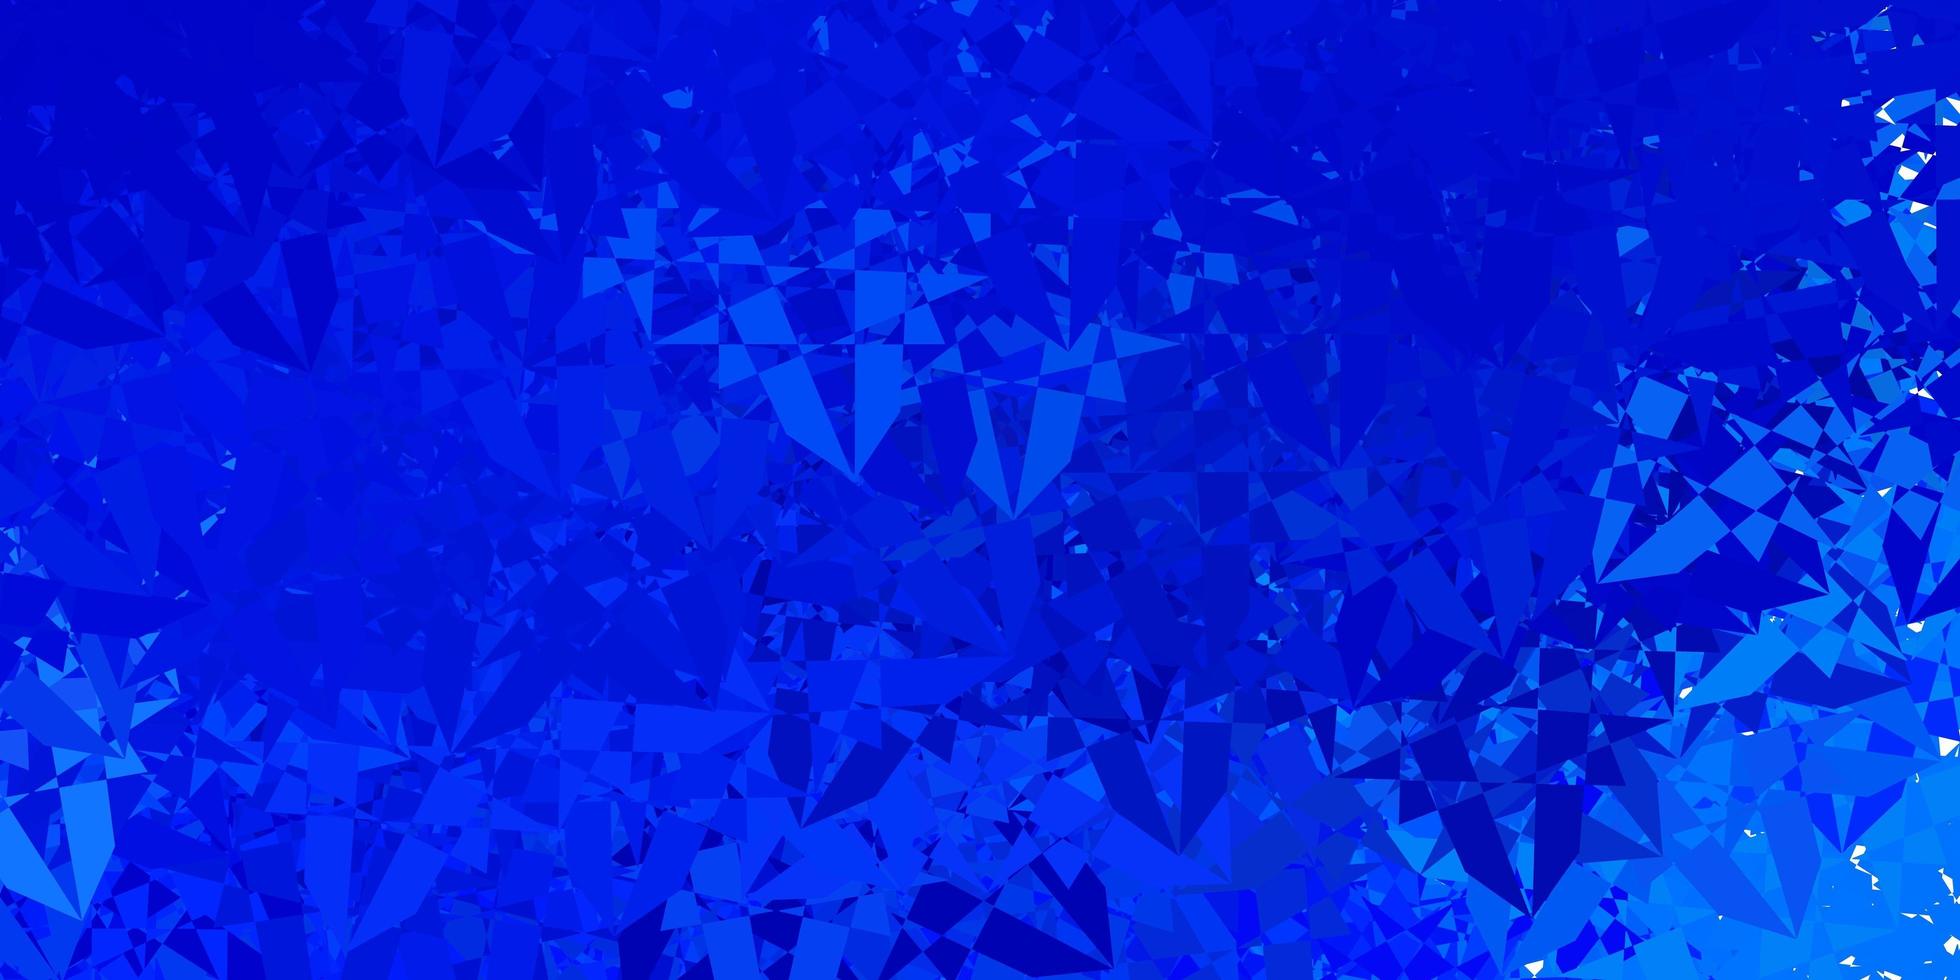 padrão de vetor azul claro com formas poligonais.